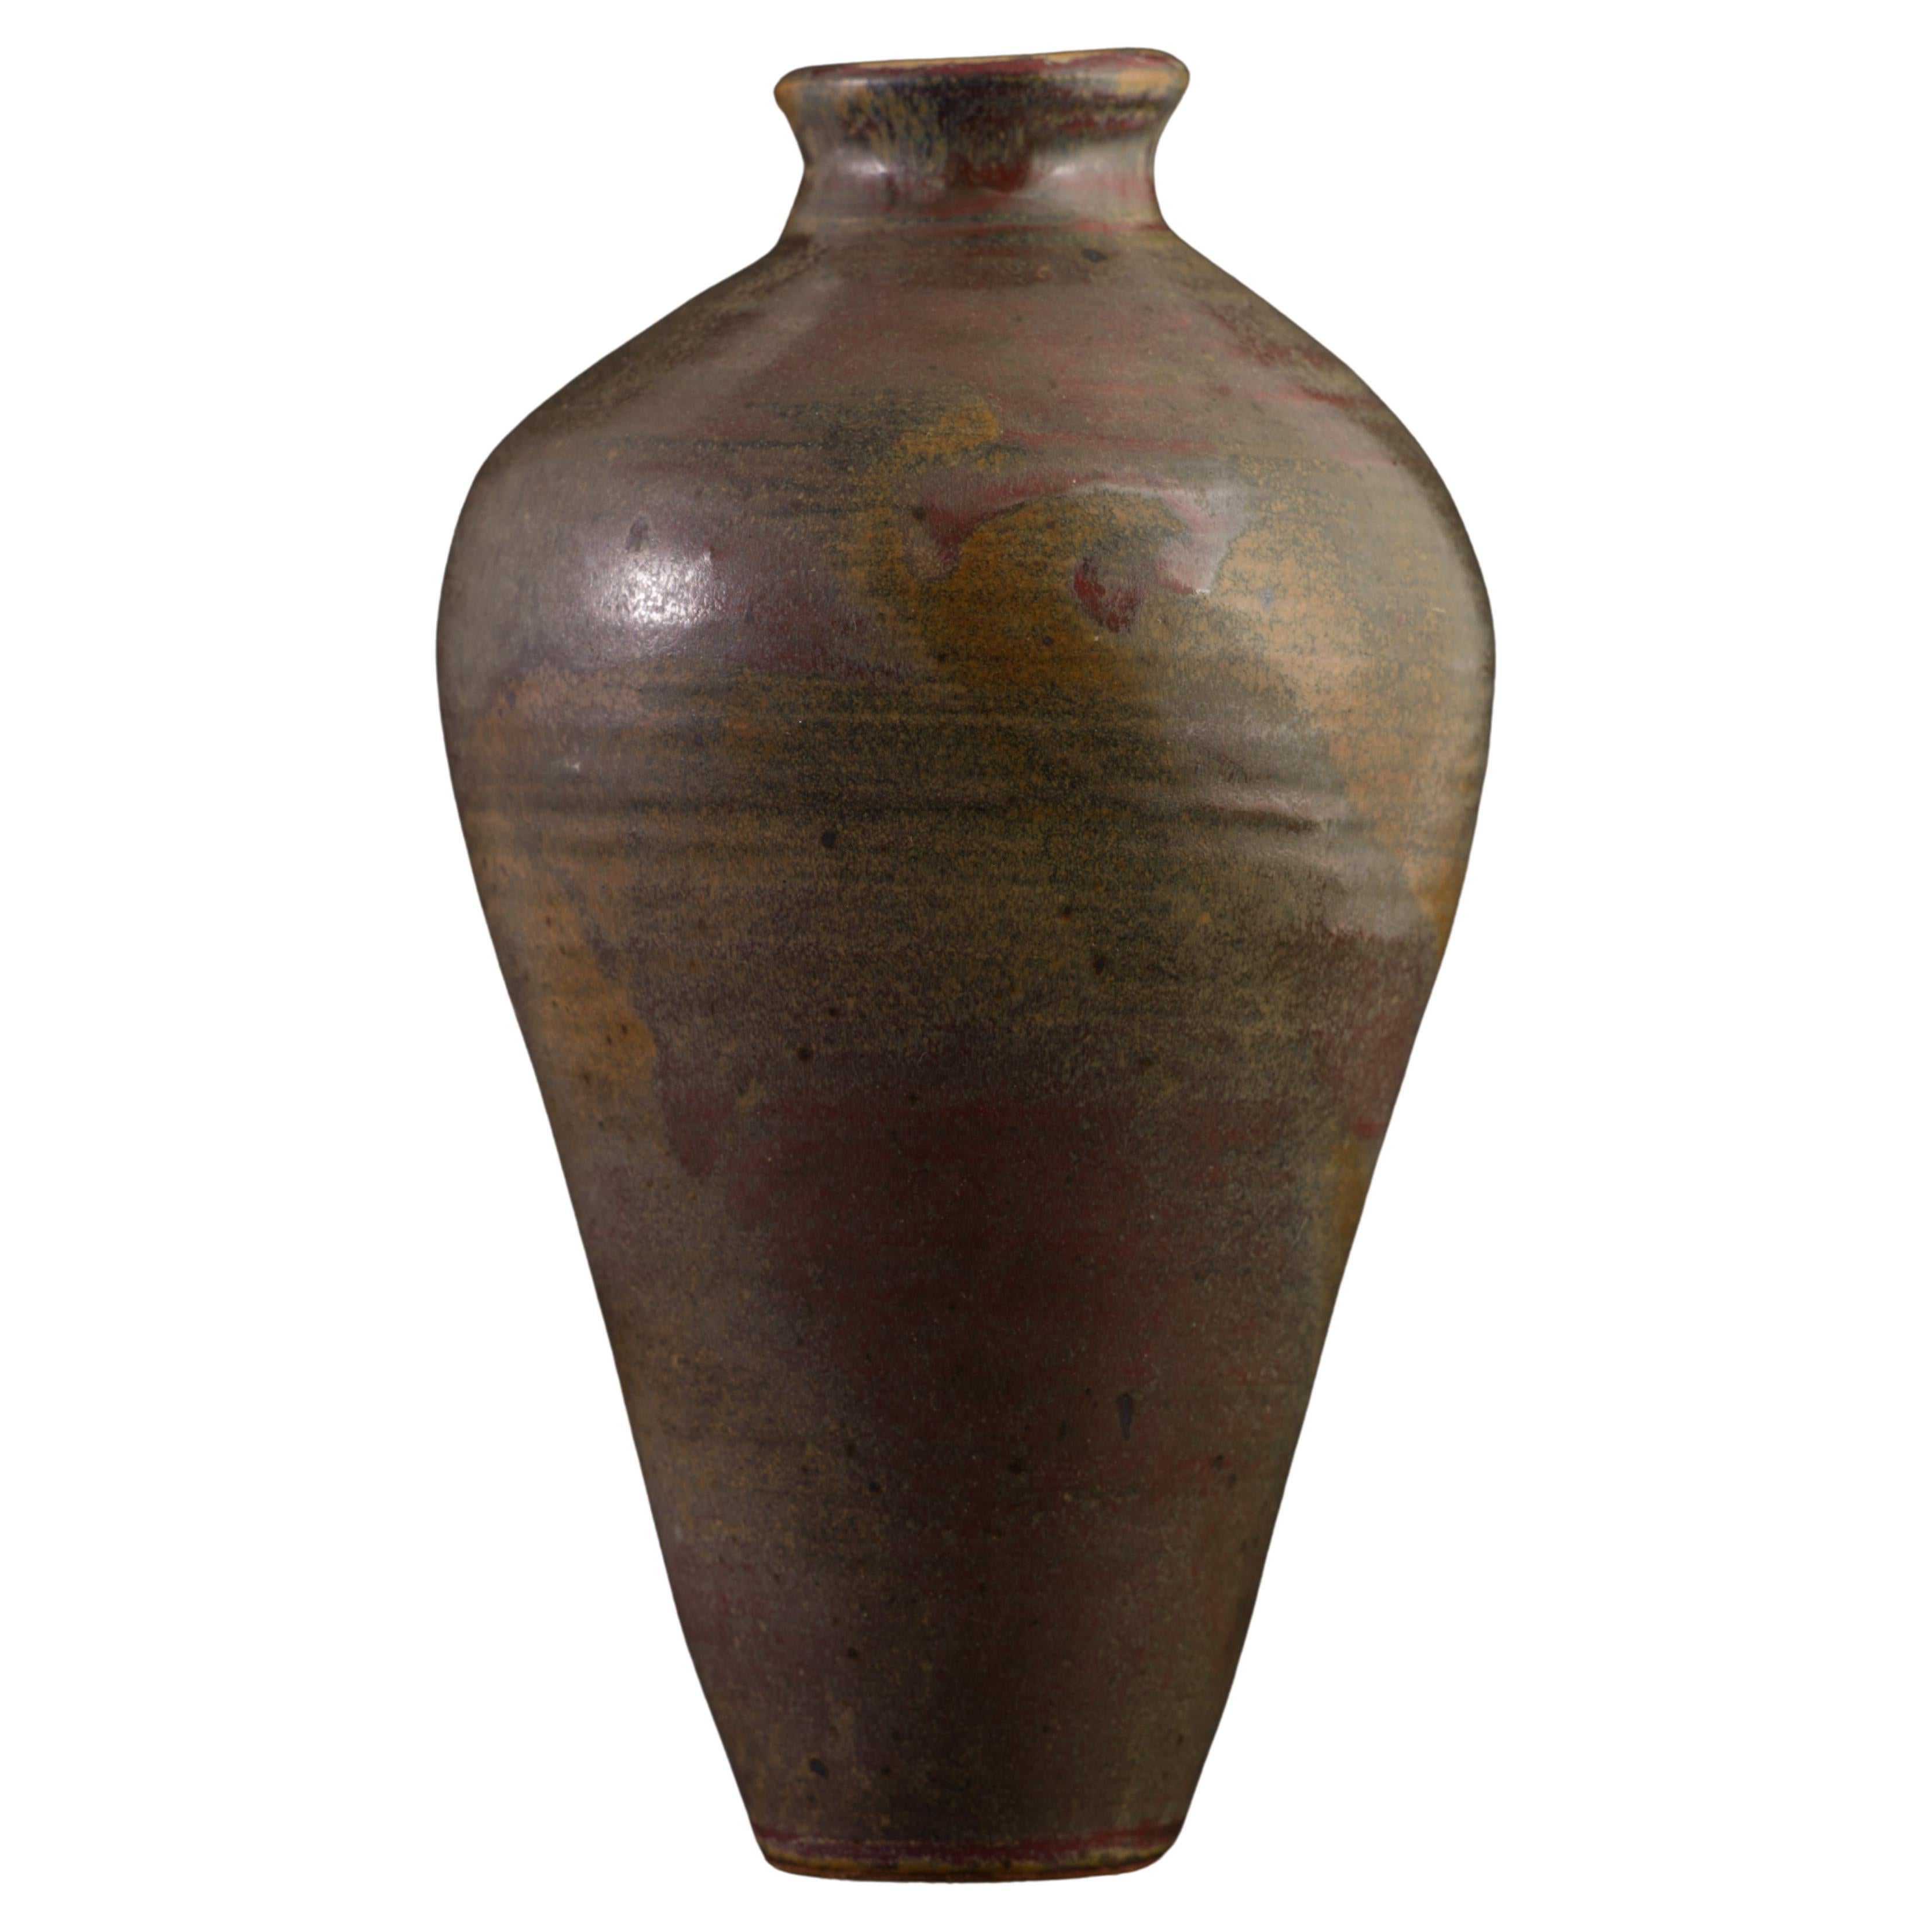 Studio Pottery Handgedrehte Vase in Brauntönen, signiert